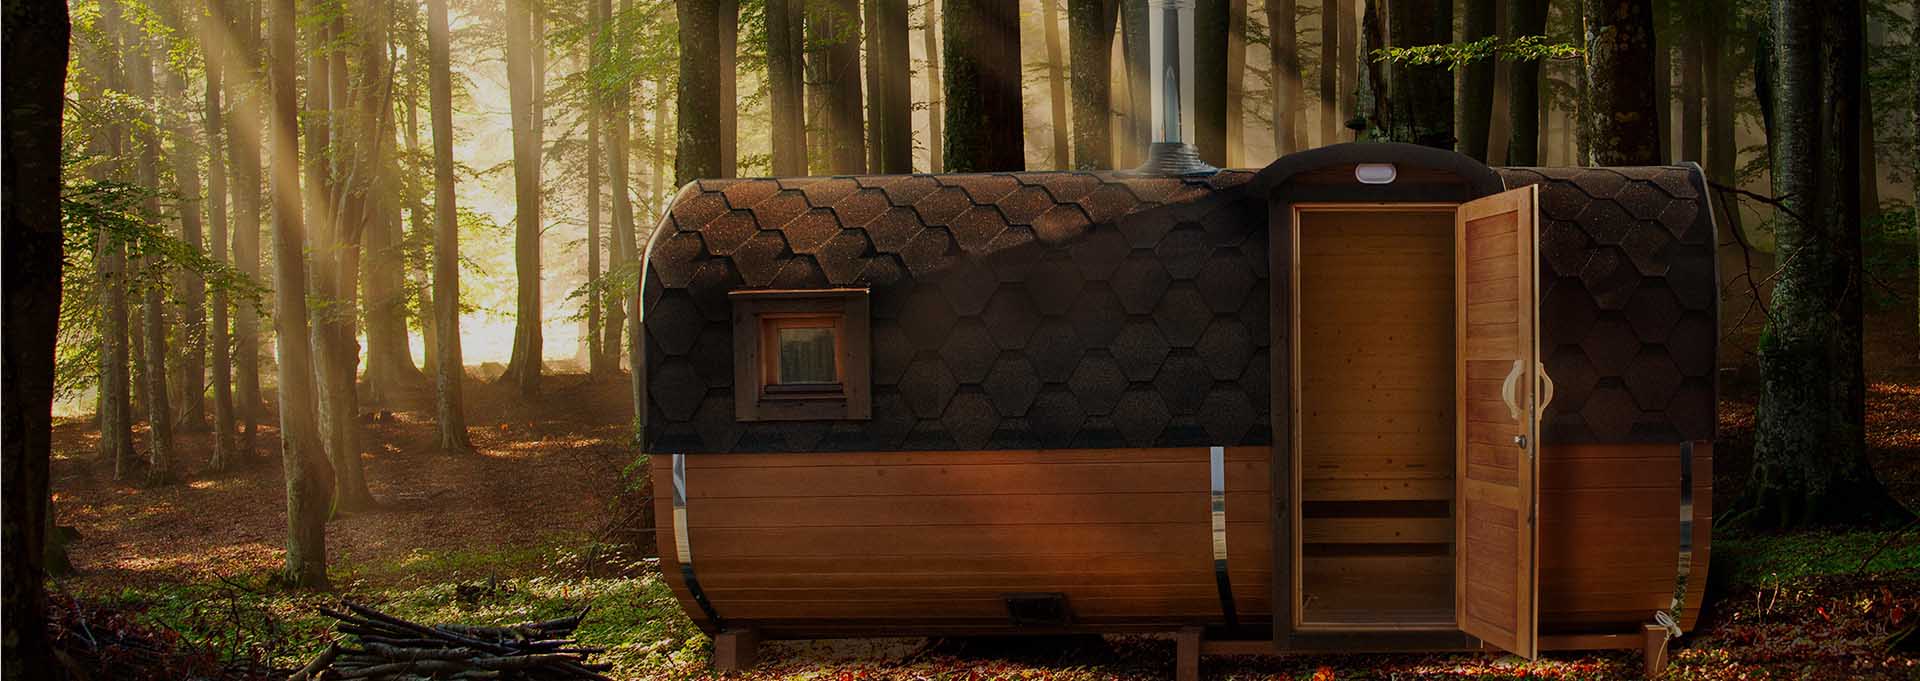 Mobile Sauna leihen Mietpark von Baumaschinenverleih-Potrep